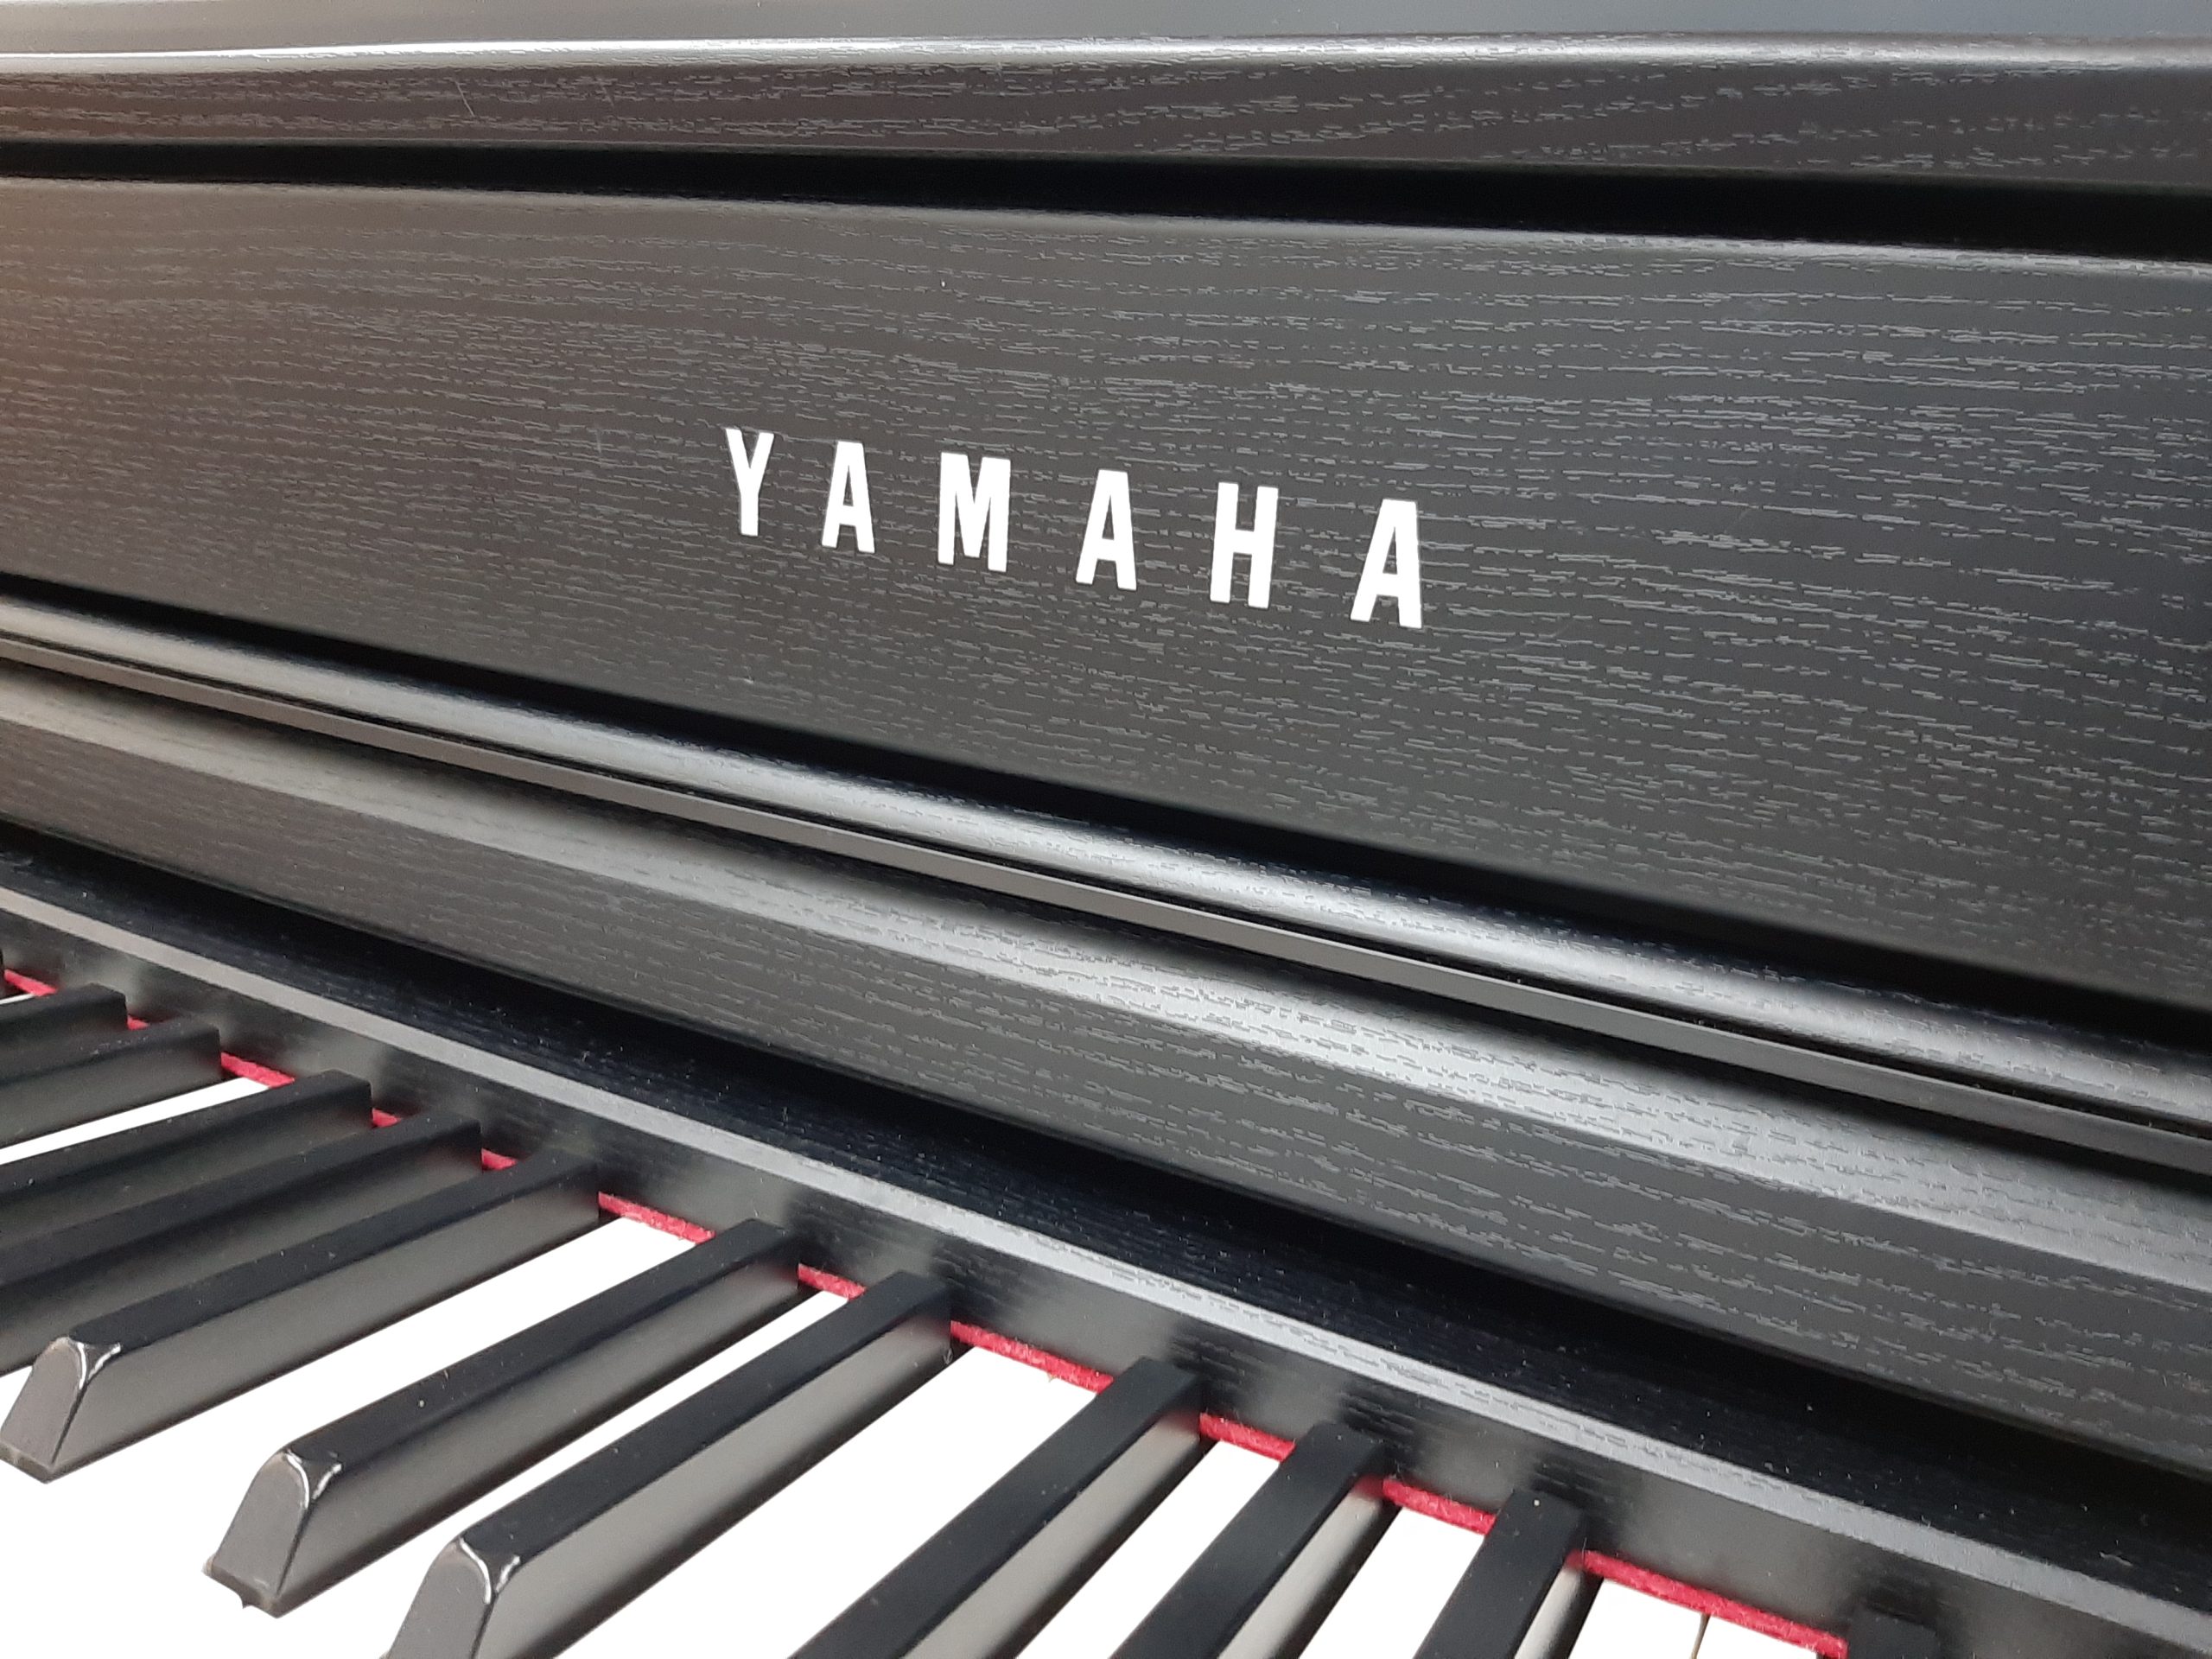 中古電子ピアノ YAMAHA CLP-635B